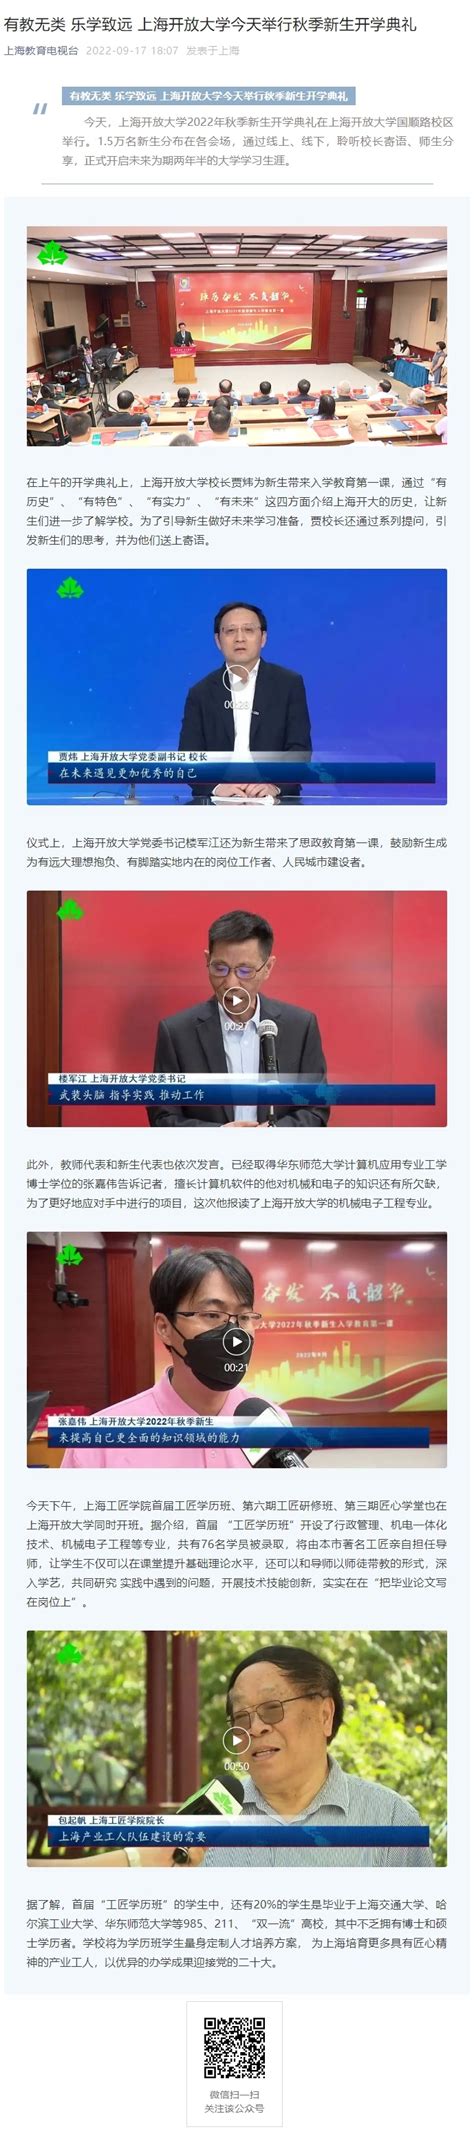 上海教育电视台公众号：有教无类 乐学致远 上海开放大学今天举行秋季新生开学典礼